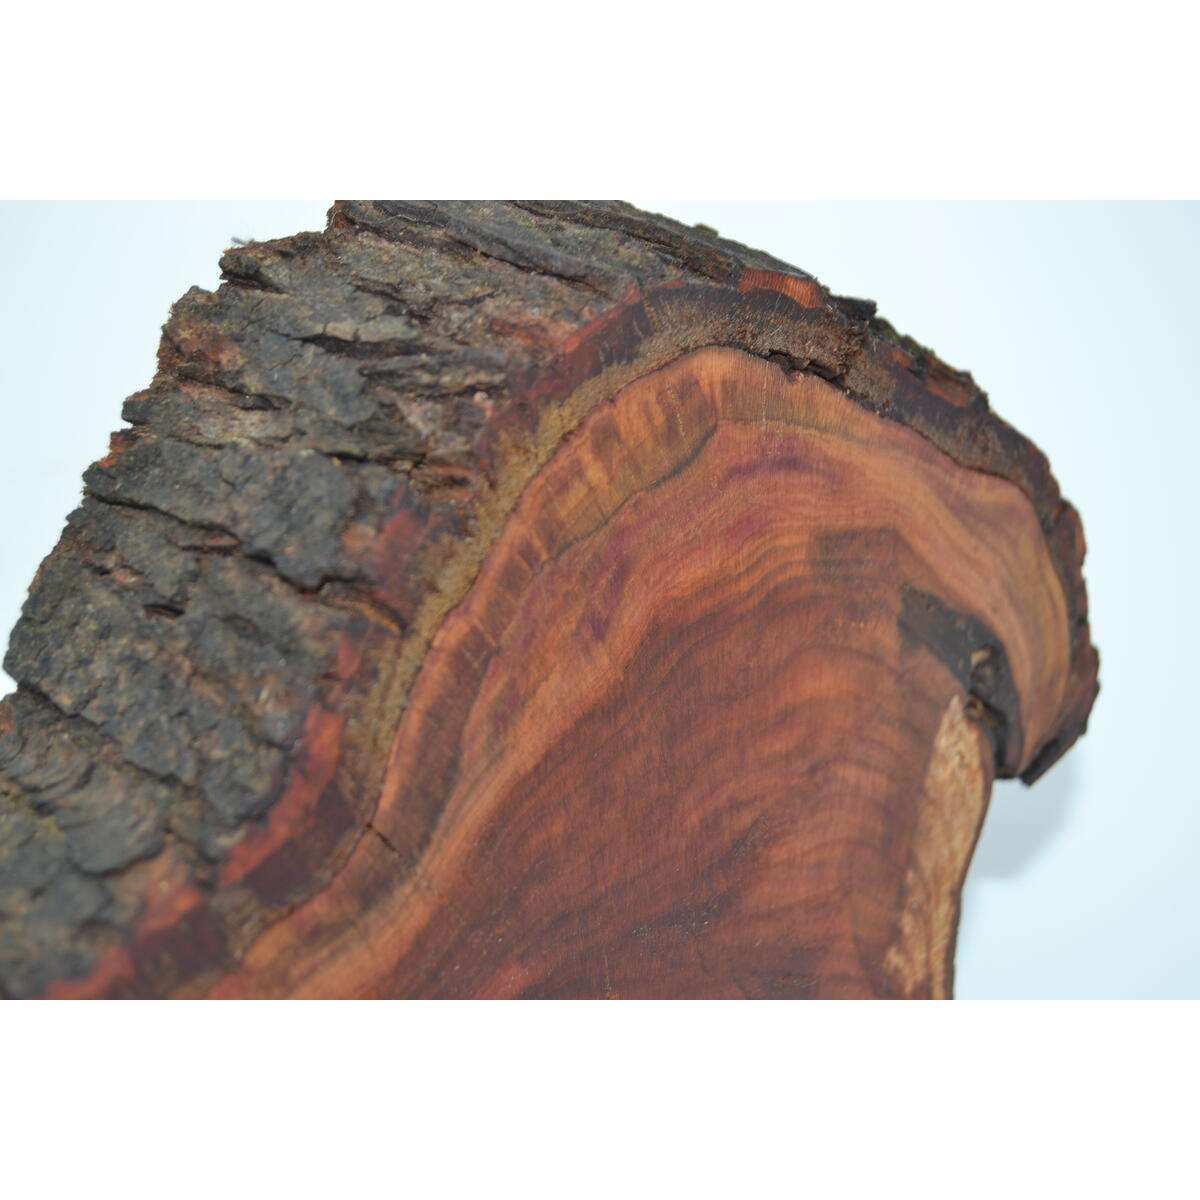 Holz Wanduhr aus Zwetschke Uhr 29x 25 cm Unikat Handarbeit